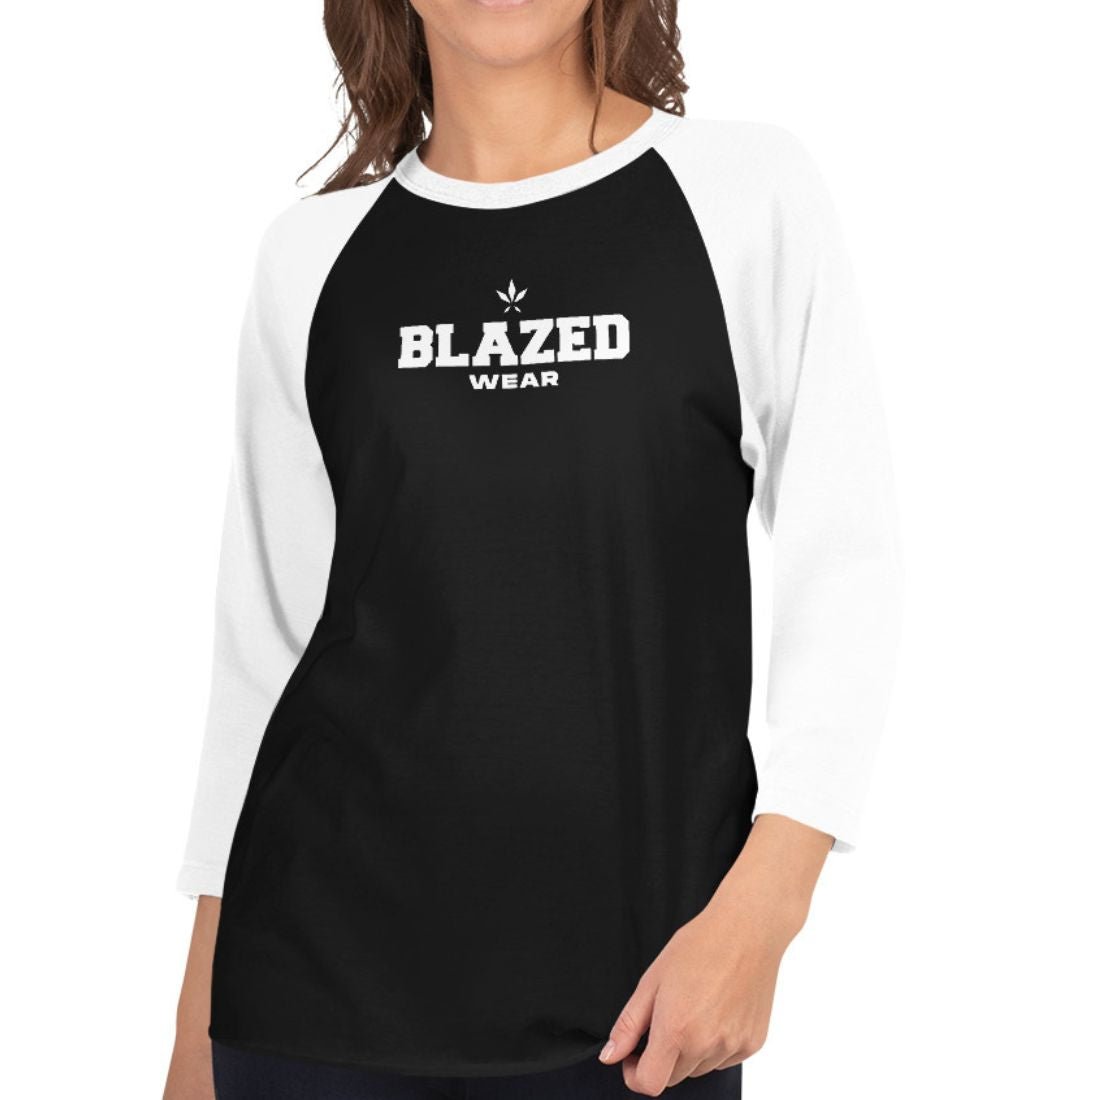 Blazed Wear Classic Raglan Tee - Black/White - Blazed Wear